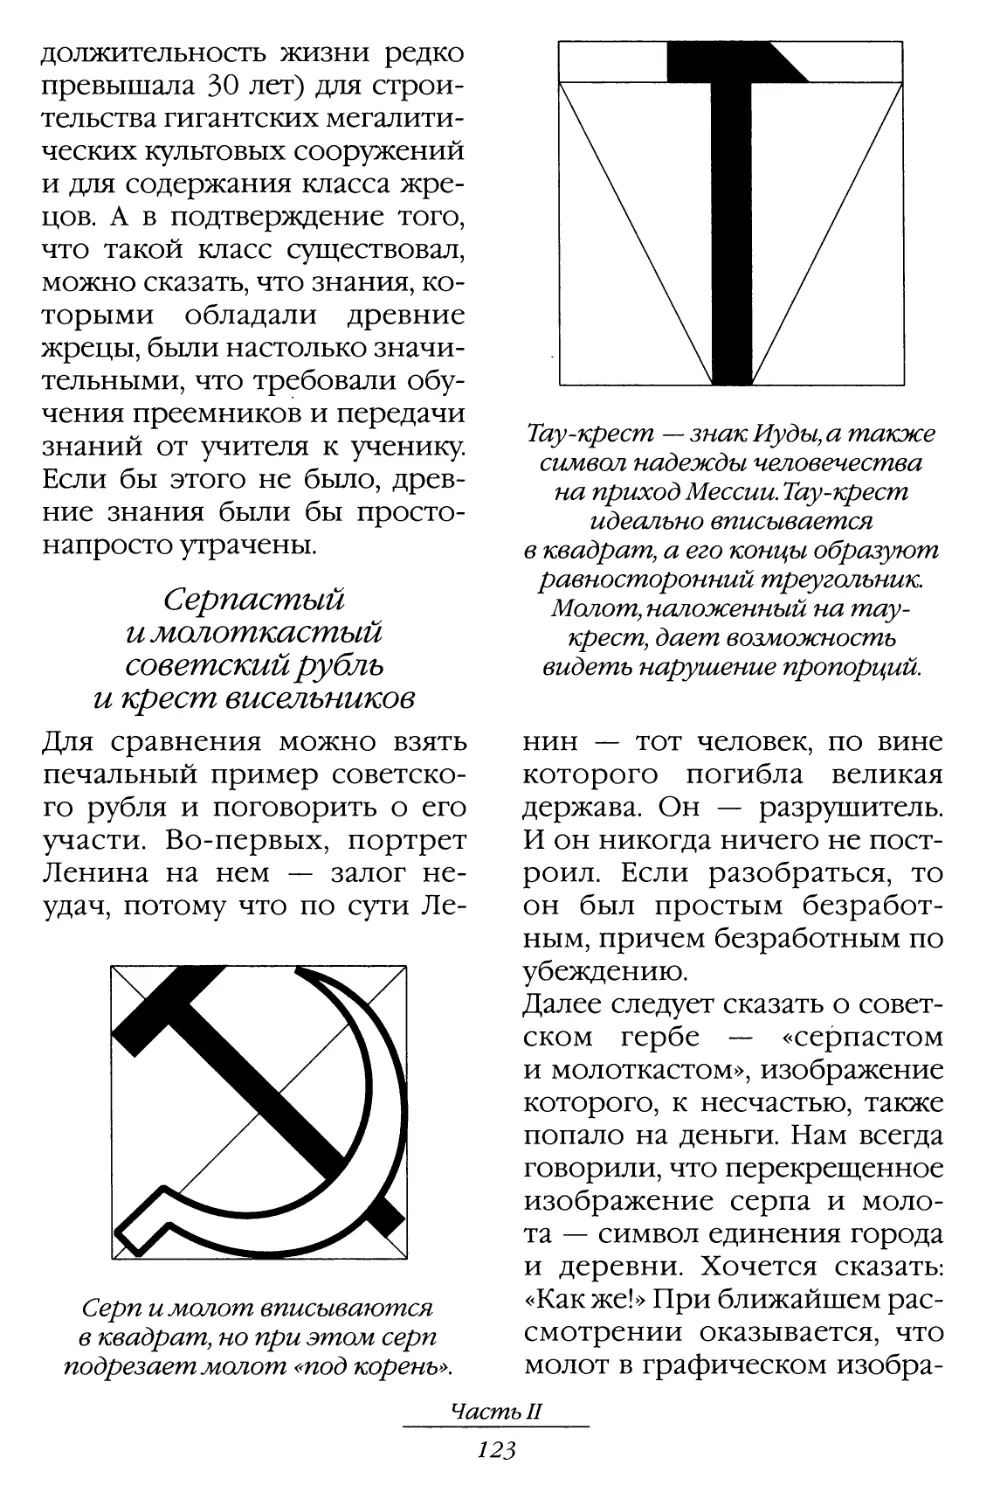 Серпастый и молоткастый советский рубль и крест висельников